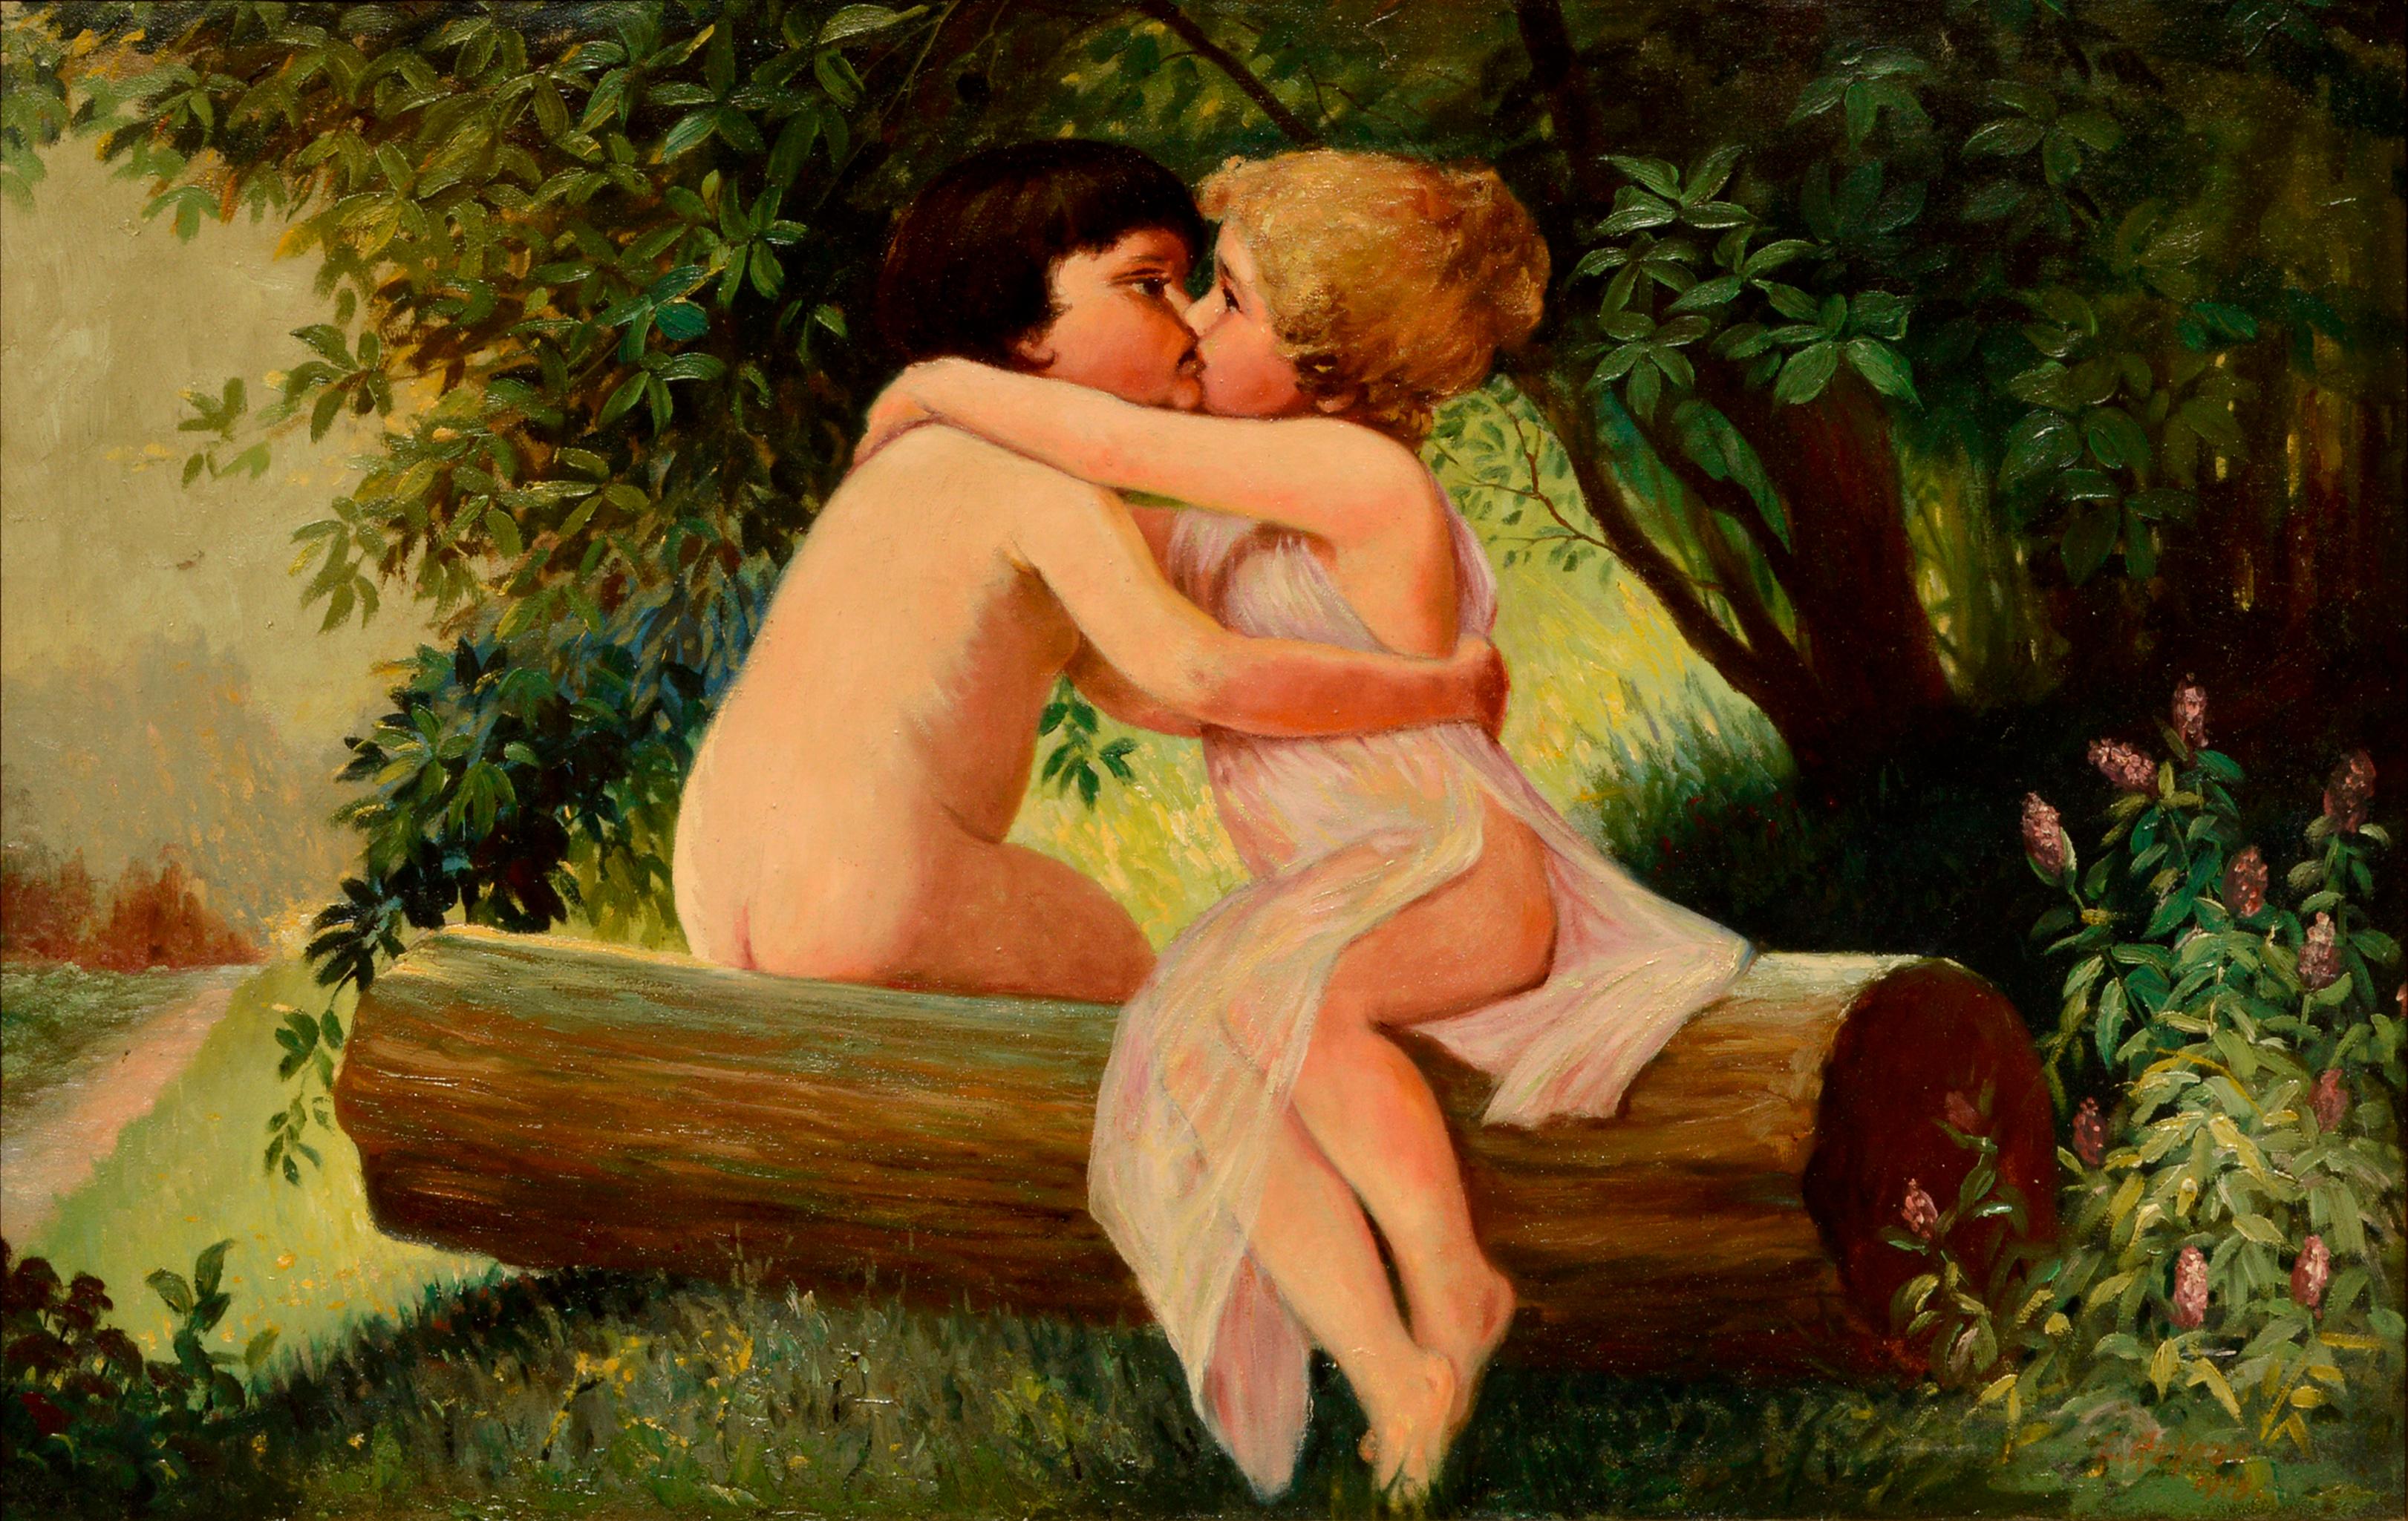 Kissing Wood Nymphen - Figurative Landschaft des frühen 20. Jahrhunderts  – Painting von Carl F. Ruhnau